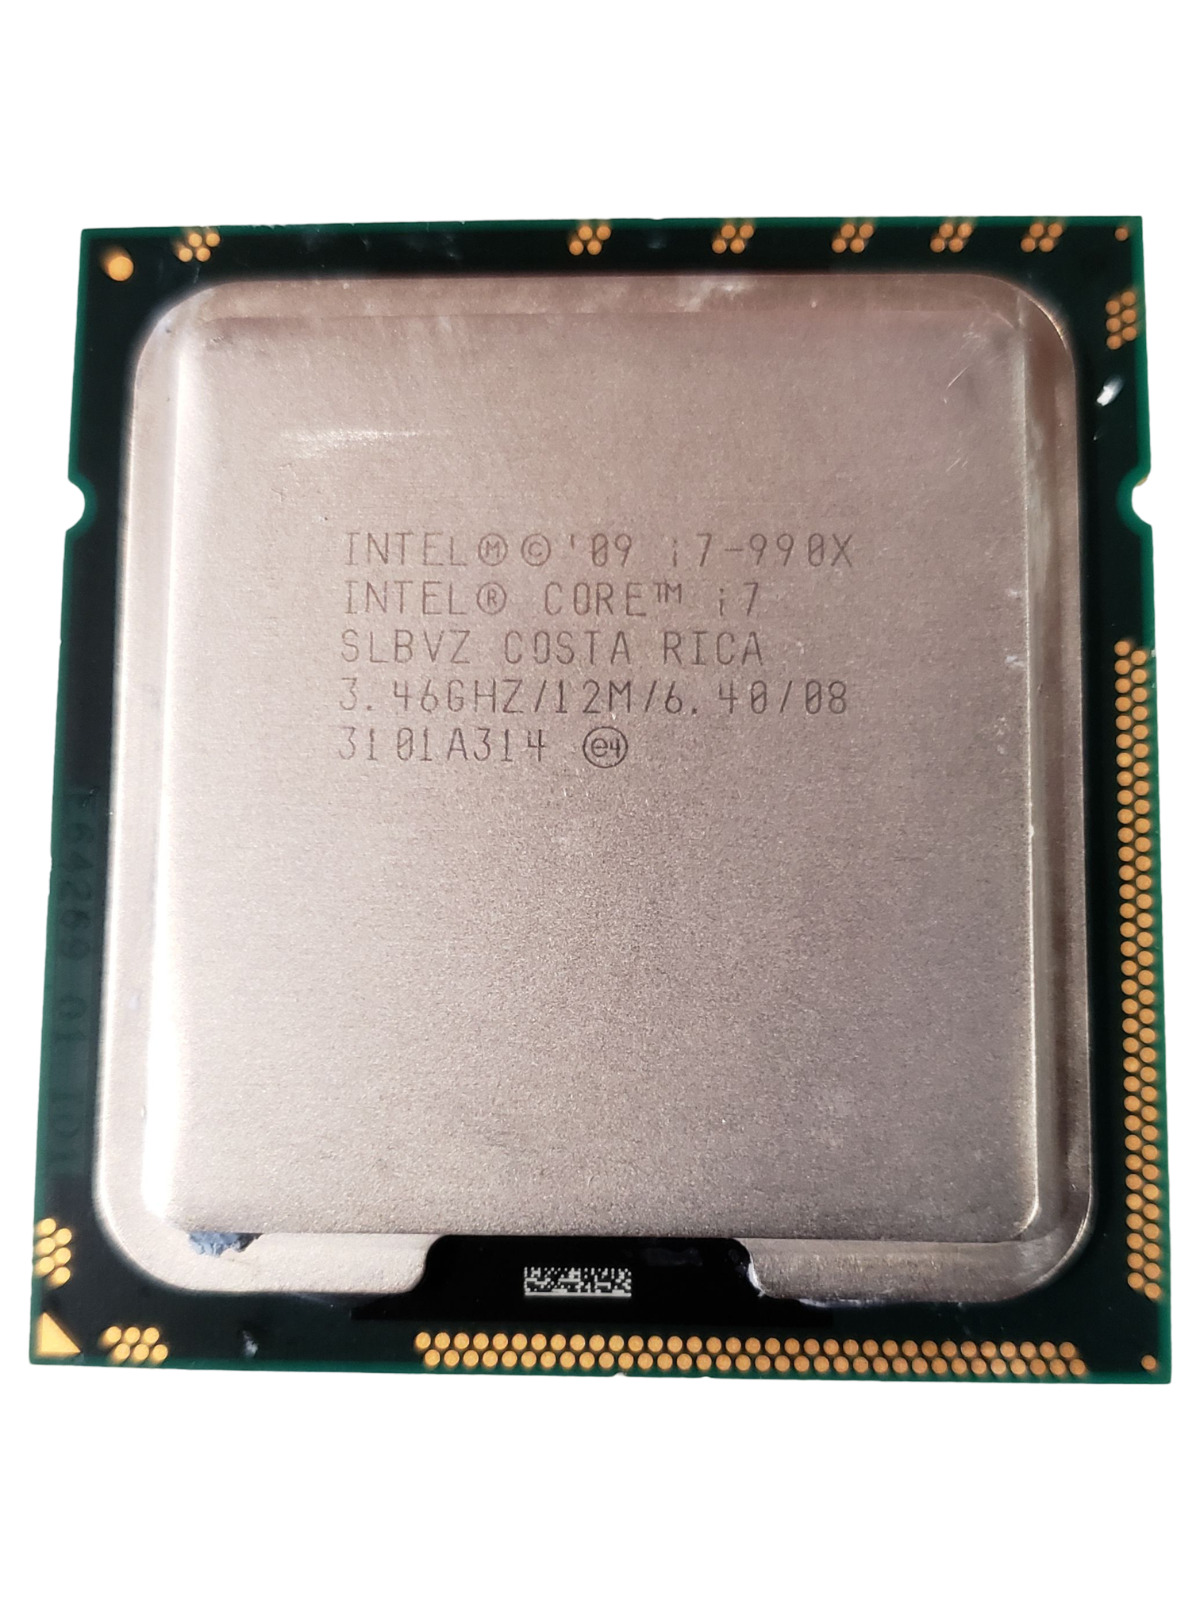 Intel Core i7-990x 6 Core 3.46GHz FCLGA1366 Desktop Processor